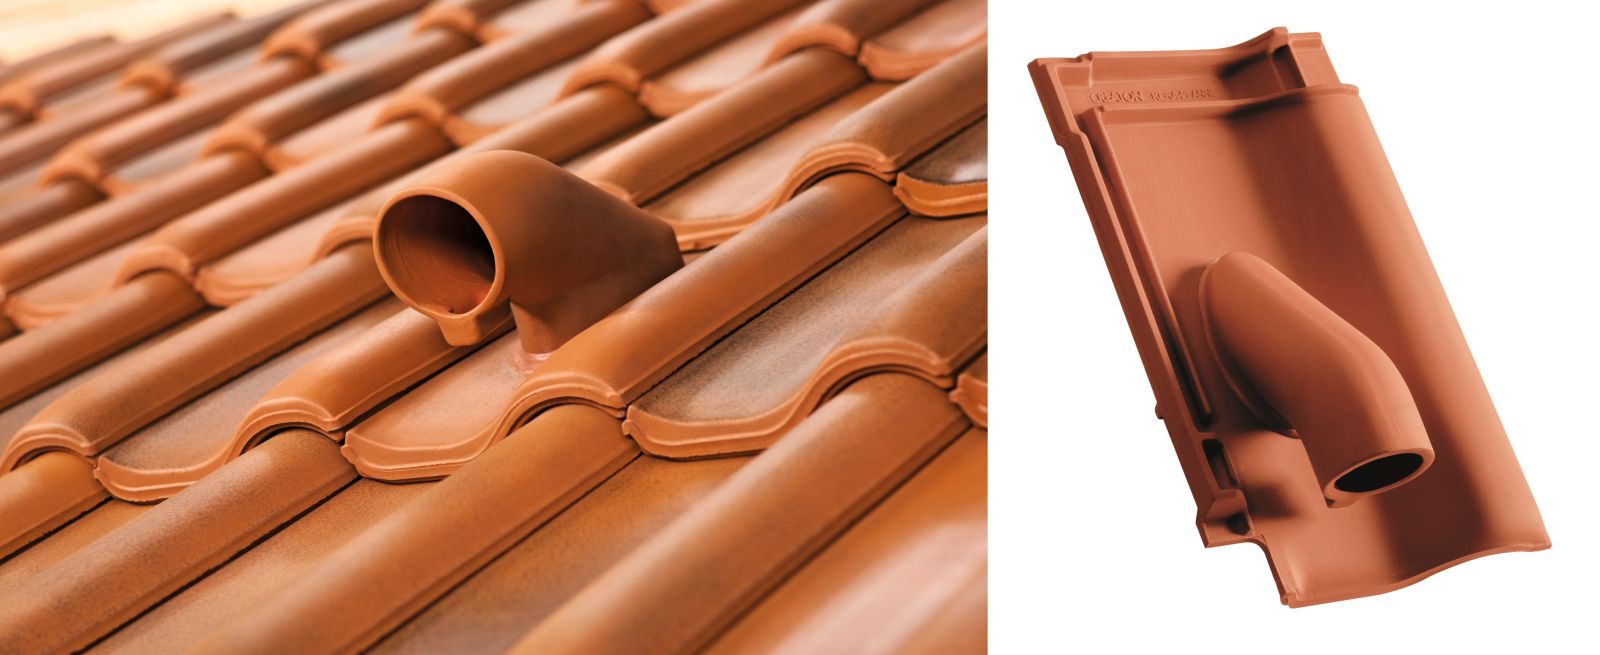 Ceramiczna dachówka solarna pasuje do dachówki podstawowej – każdy model ma swoją uzupełniającą dachówkę przelotową, o identycznym wzorze, kolorze, wykończeniu i trwałości (fot. CREATON) 